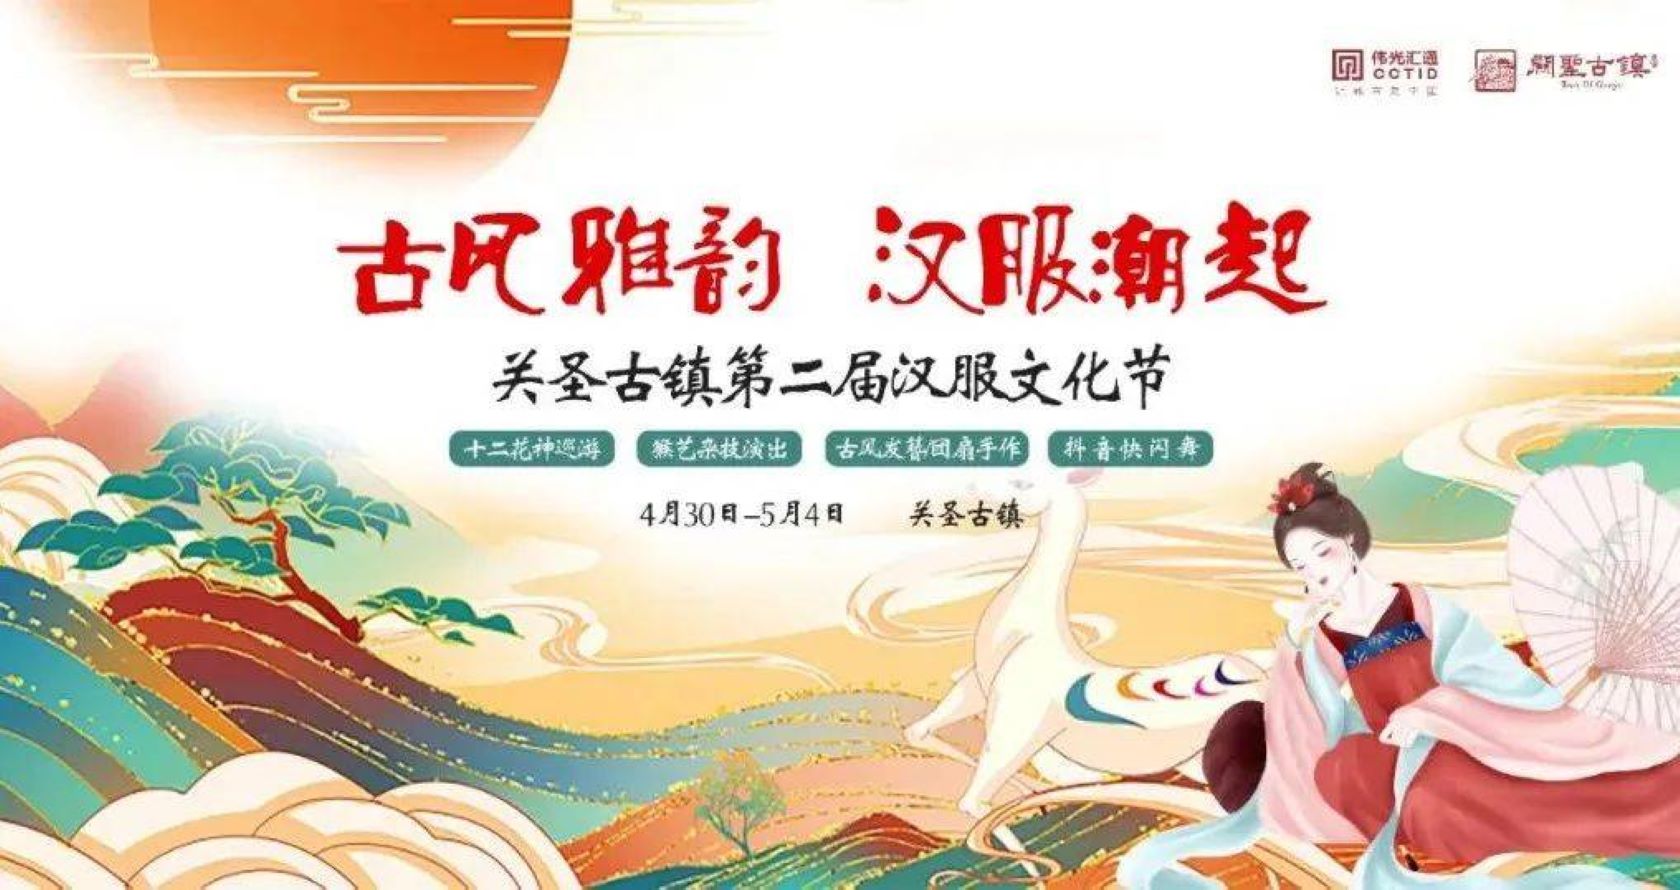 五一假期，关圣古镇第二届汉服文化节攻略抢先看！